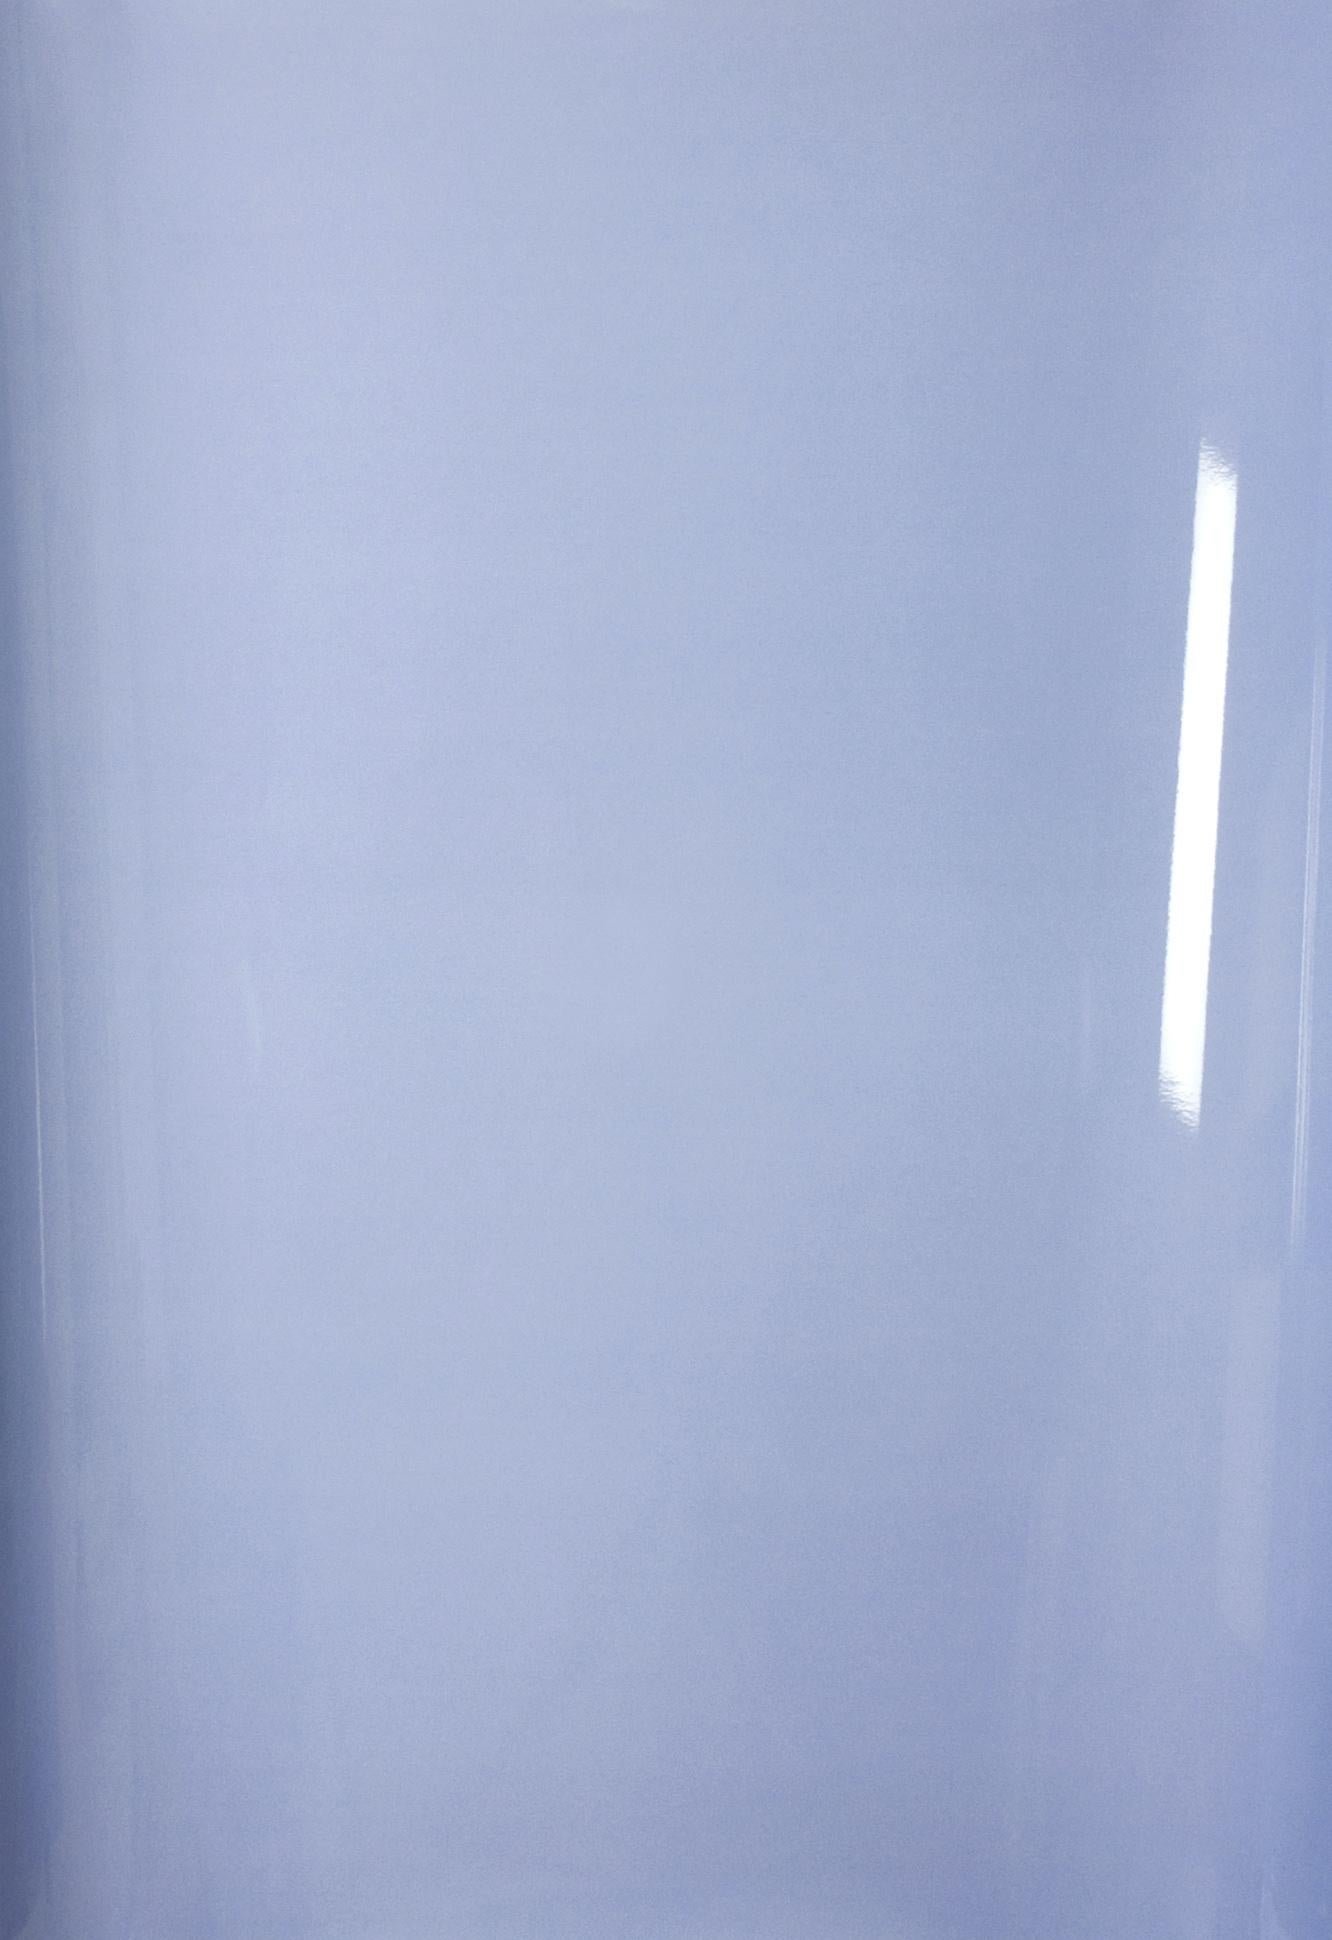 Ombres sur papier, n° 2 - Photographie abstraite contemporaine en camaïeu de bleus